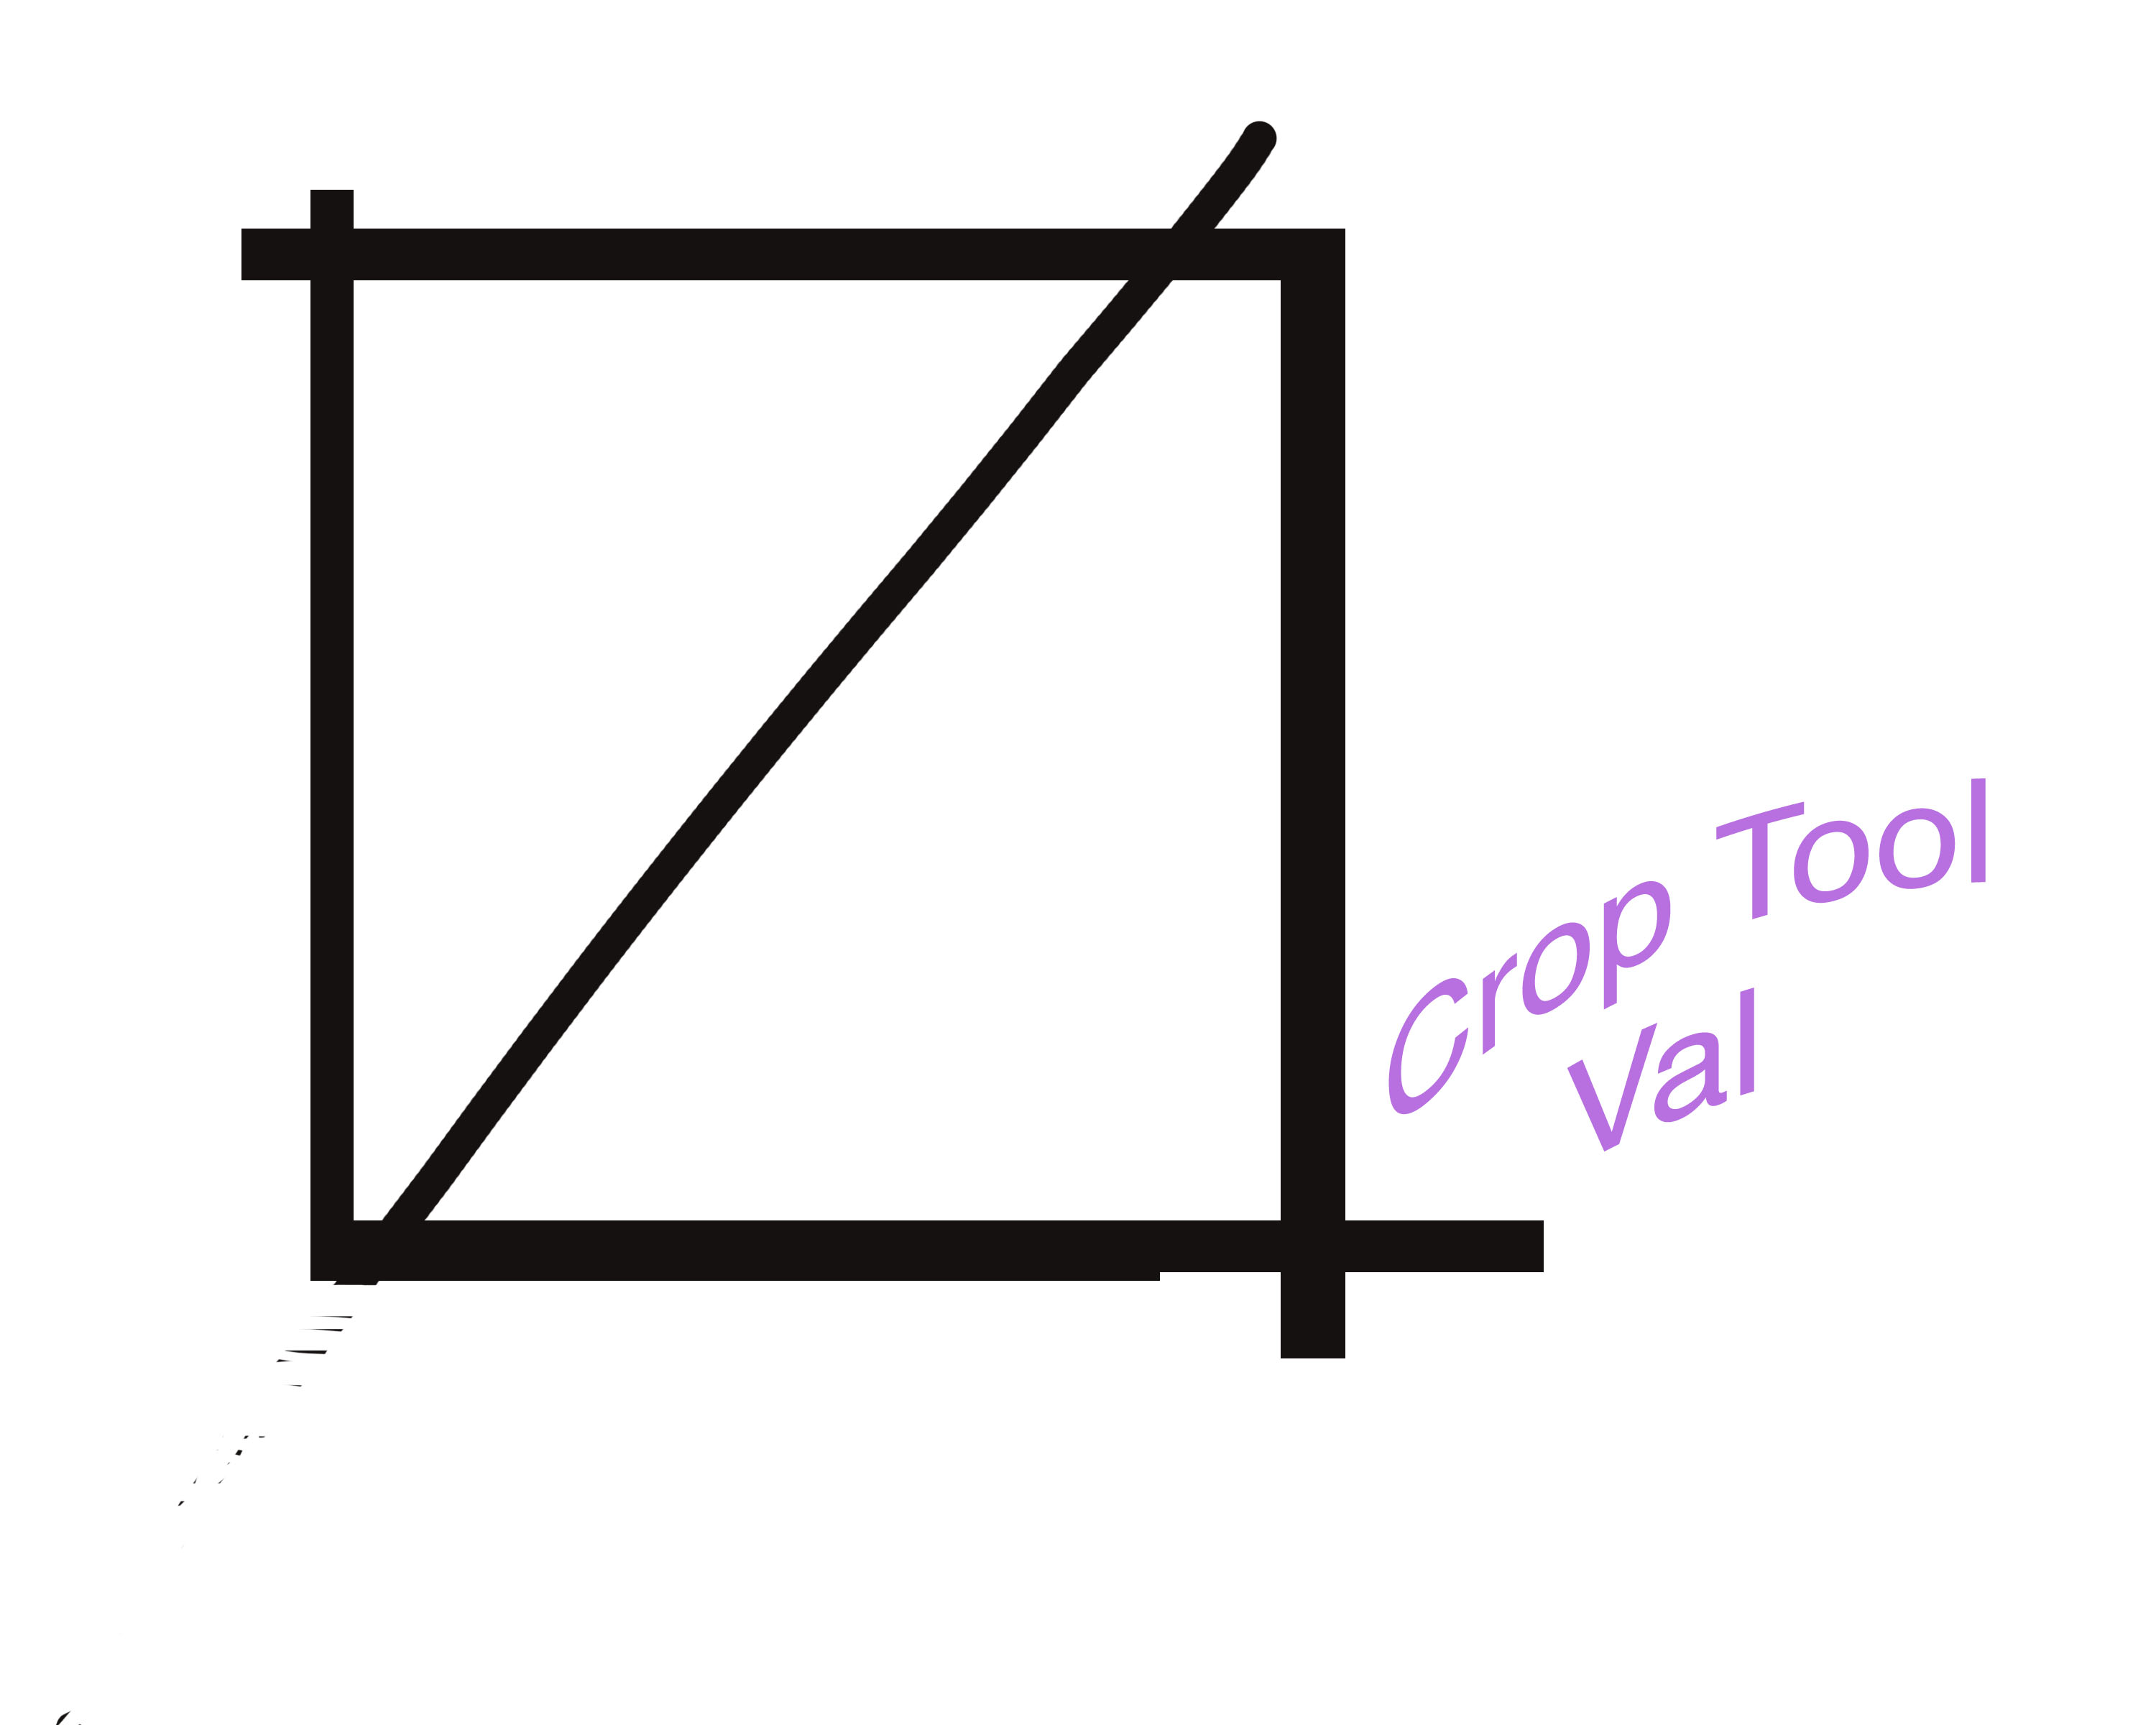 CropTool..Val